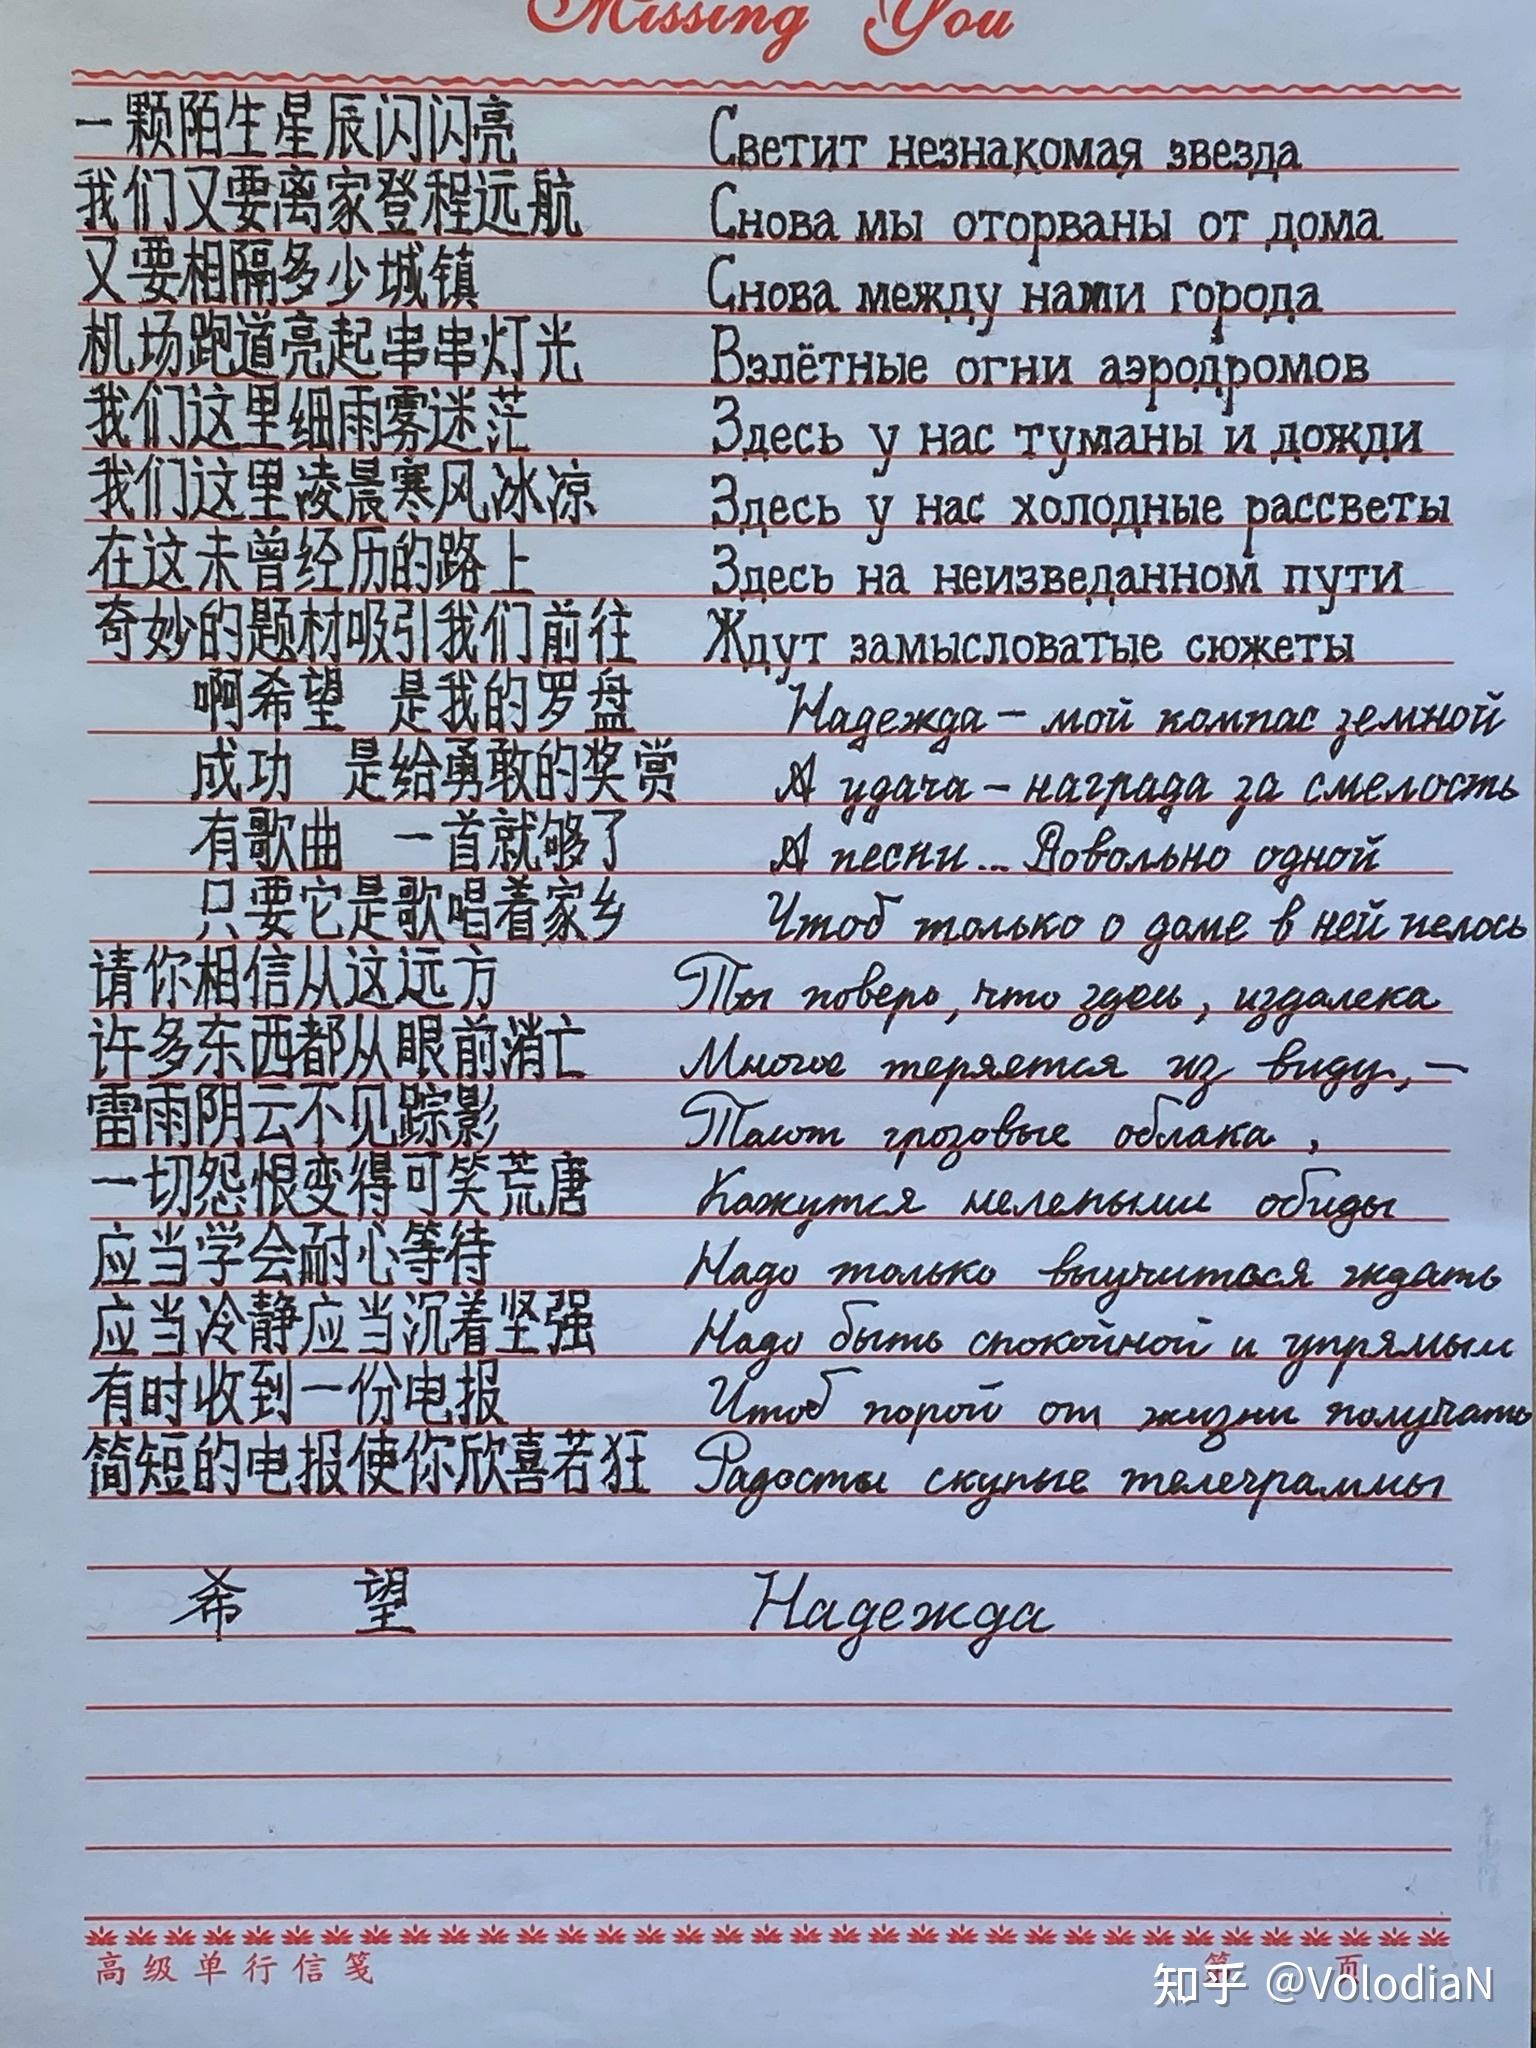 大家看看我这个俄语手写体能怎么改进? 